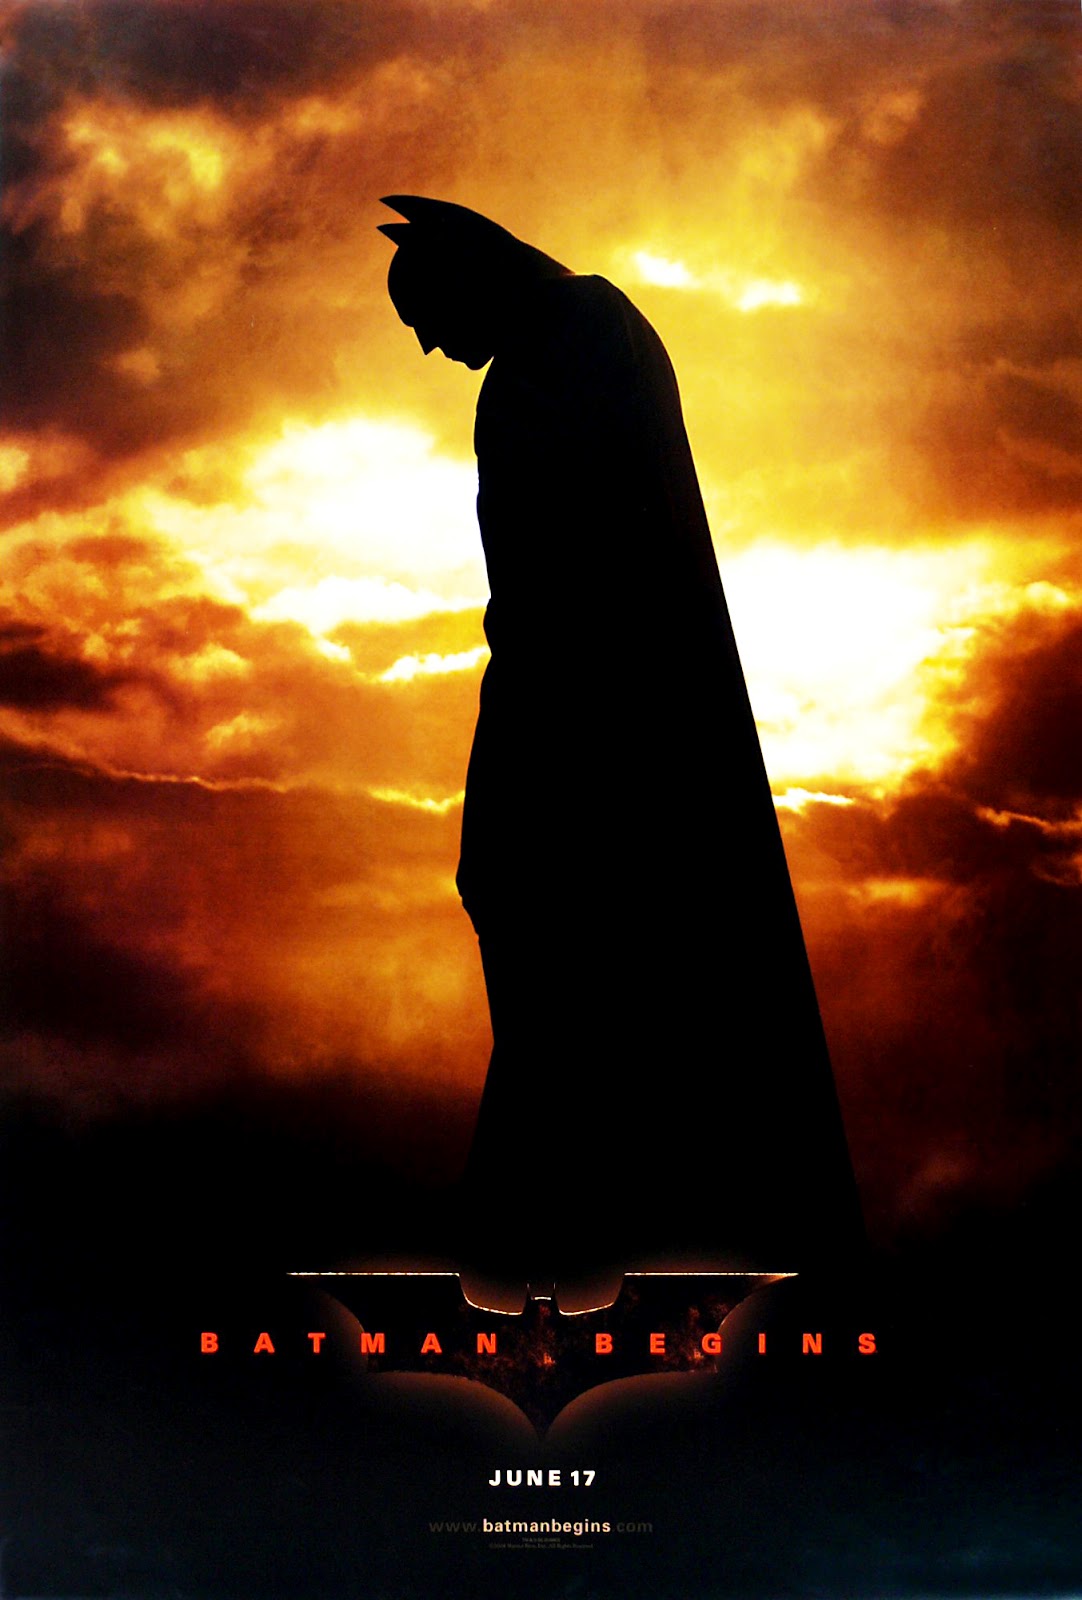 Watch Movie Batman Begins Streaming In HD